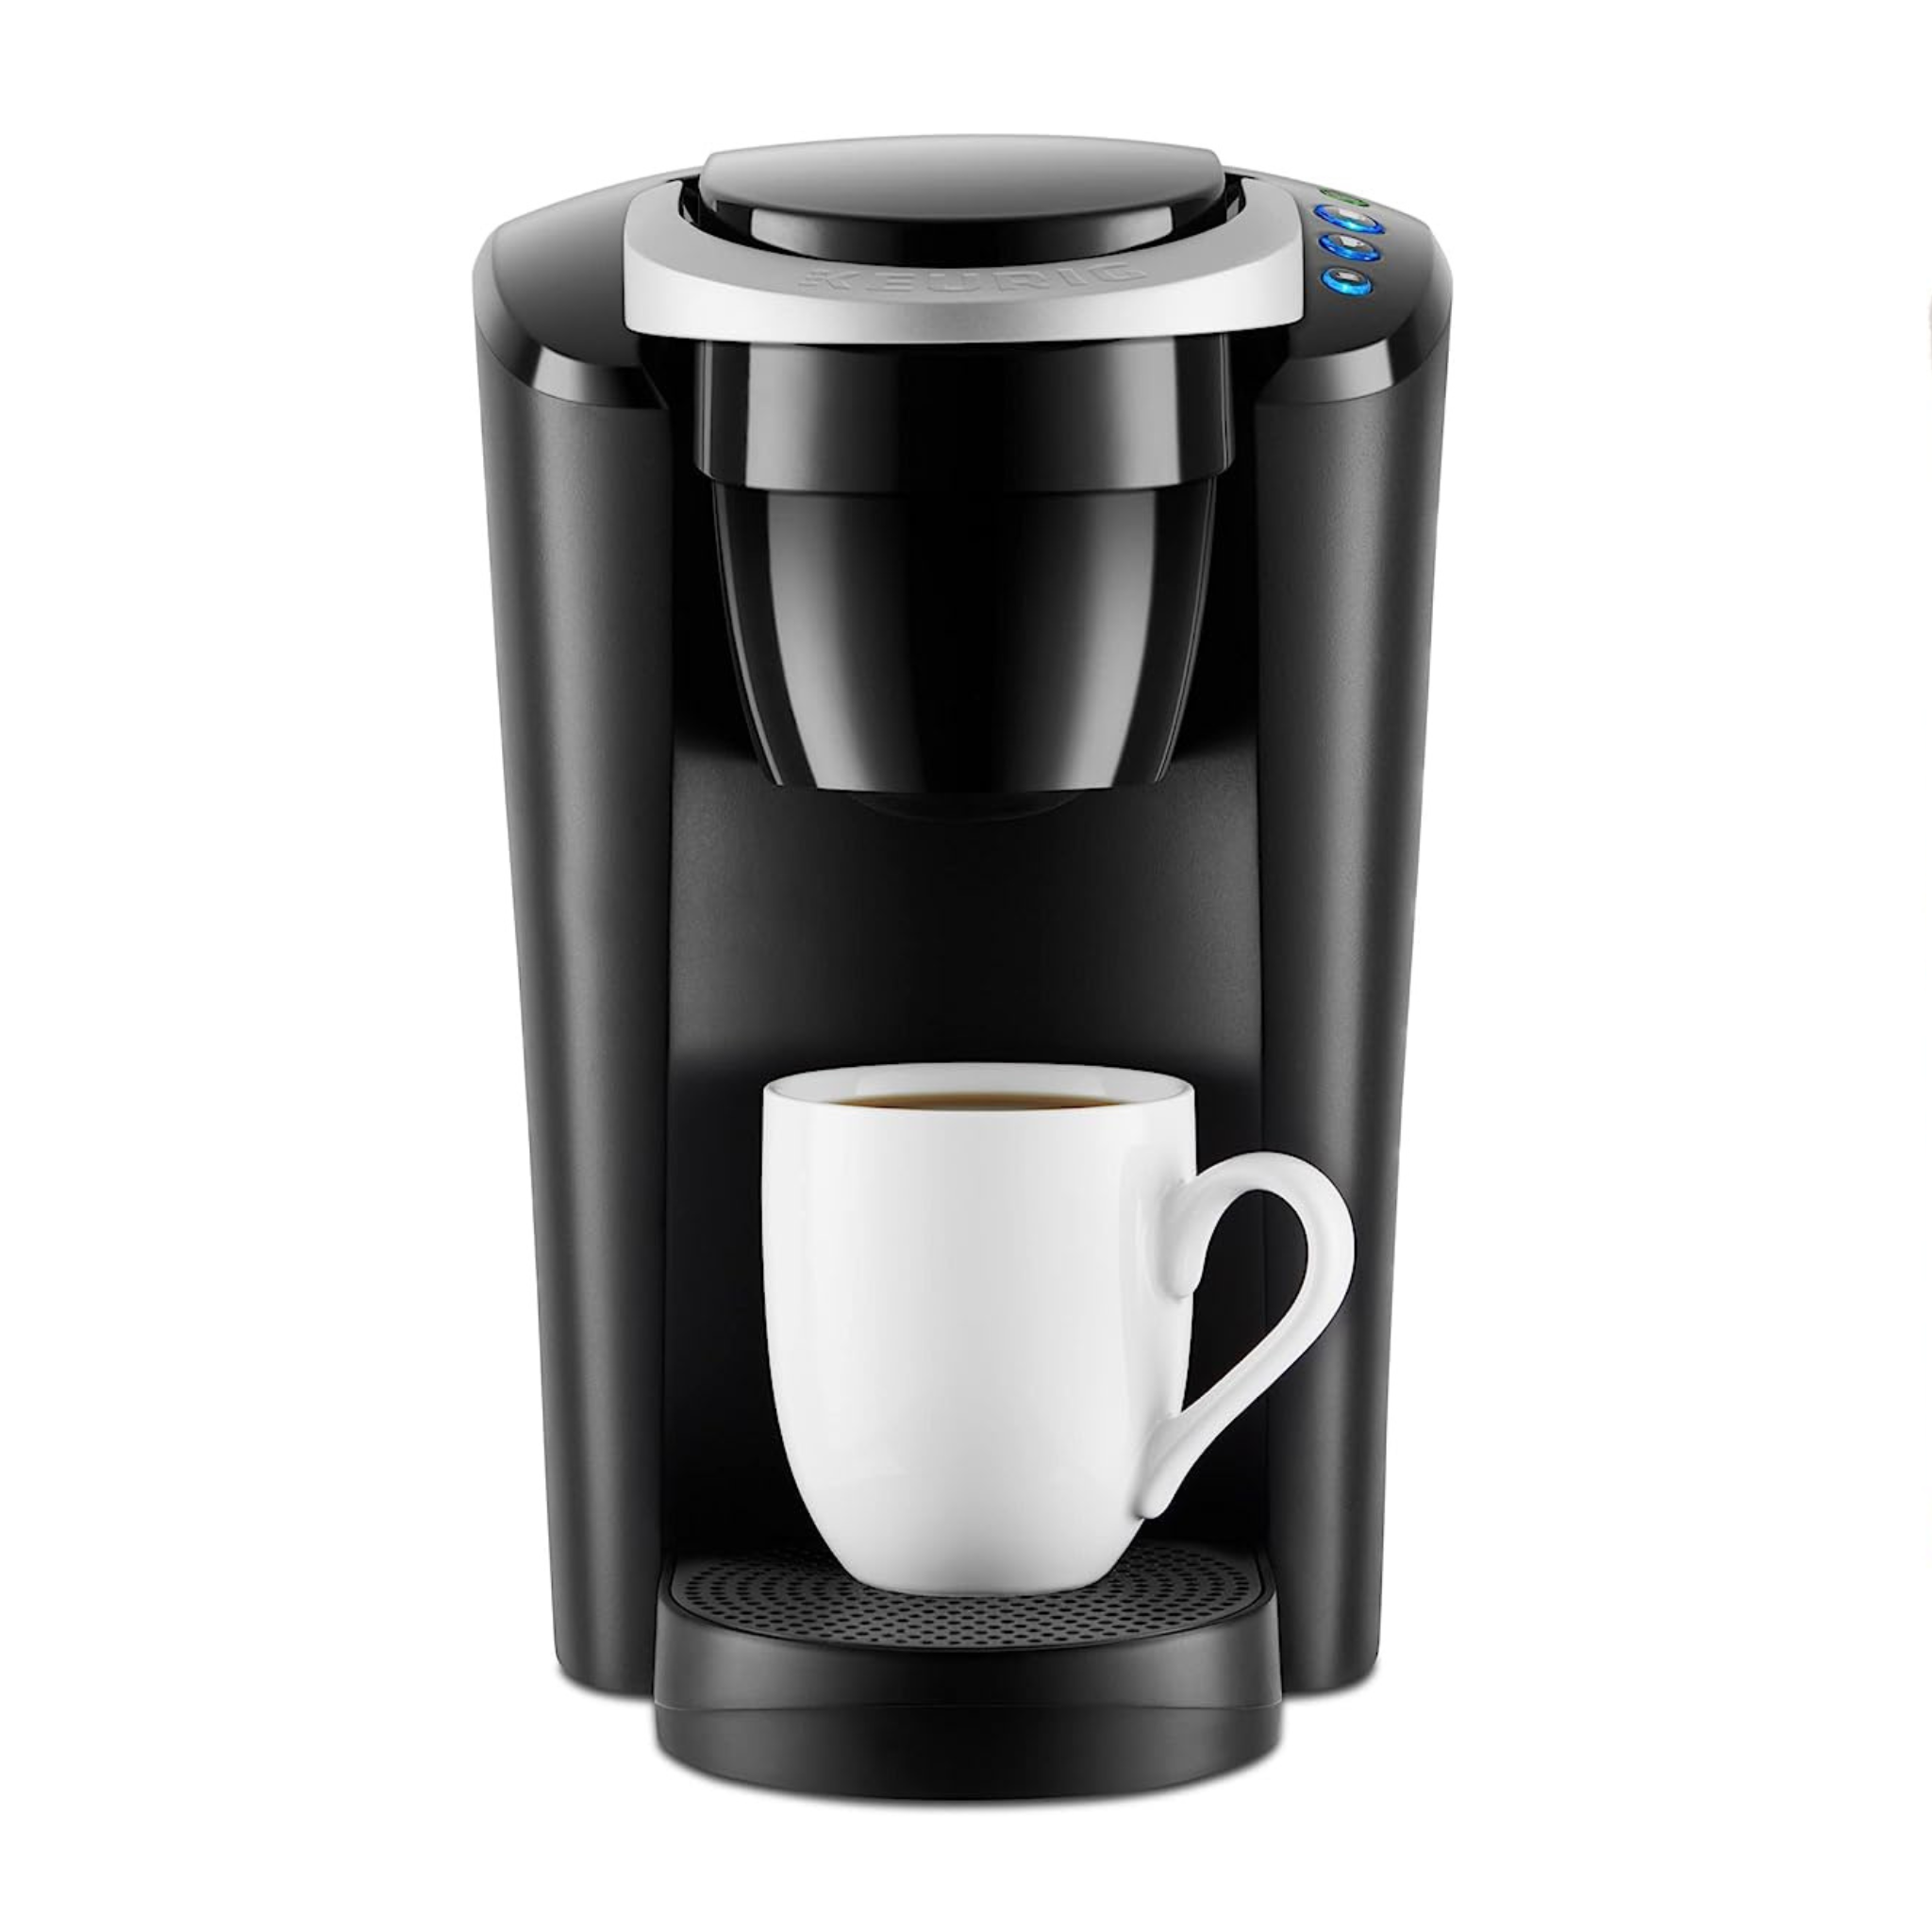 Keurig K-Compact Single Serve K-Cup Coffee Maker